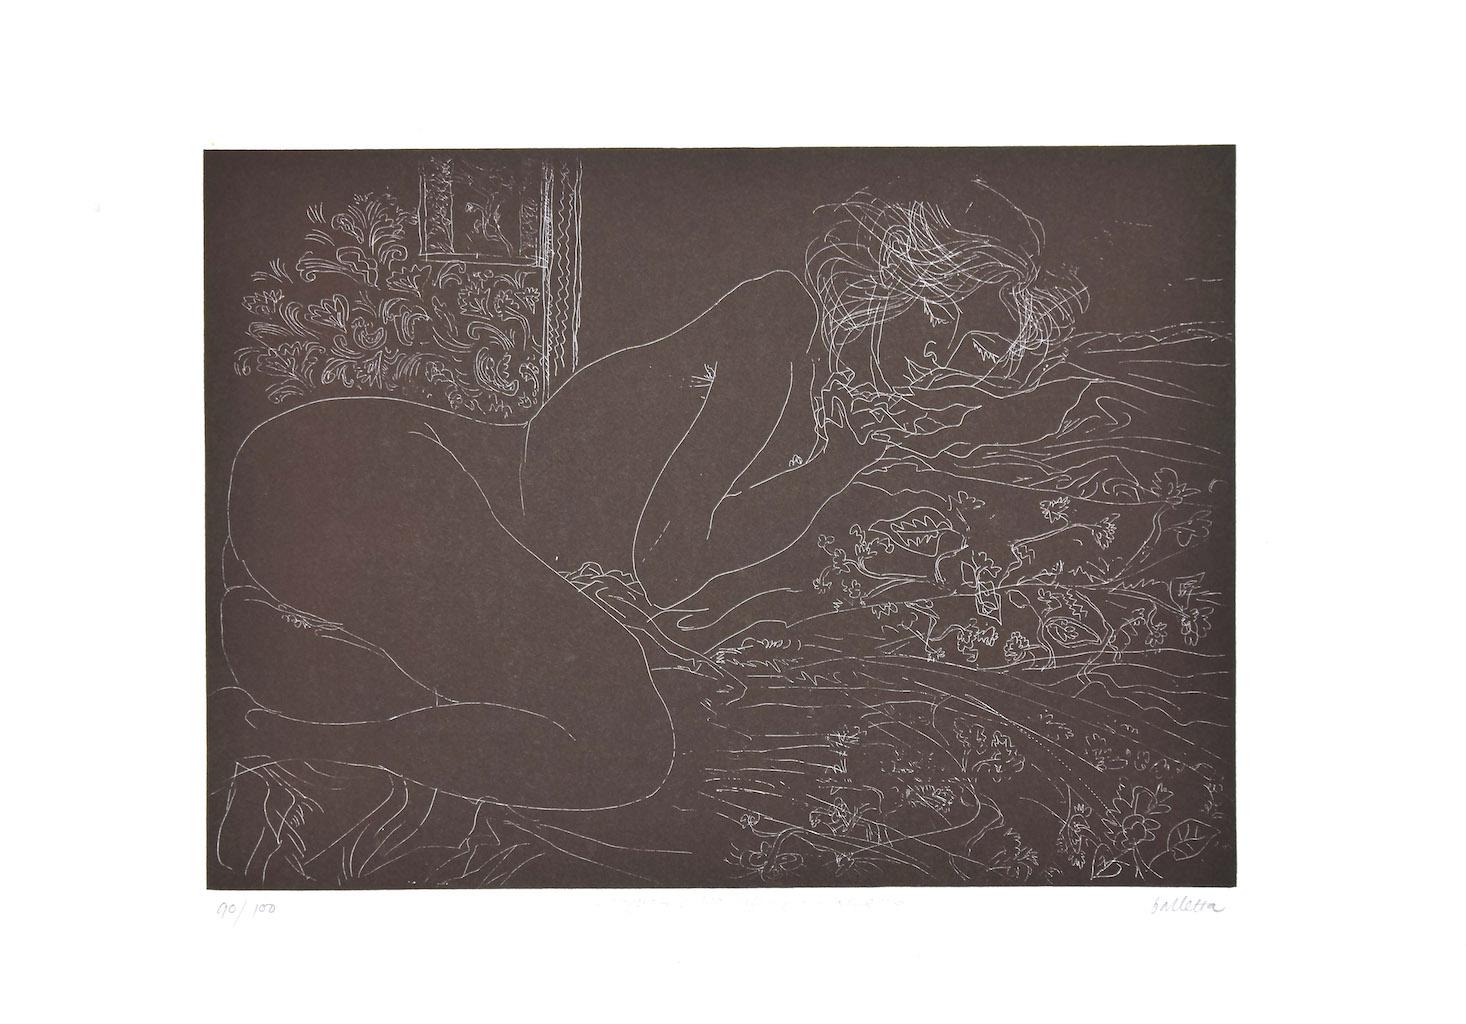 Nude ist eine Original-Radierung von Sergio Barletta. 

Rechts unten mit Bleistift handsigniert.  nummeriert unten links, Auflage. 90/100.

In sehr gutem Zustand.

Blattgröße: 35 x 50 cm.

Das Kunstwerk stellt einen liegenden Akt durch sichere und